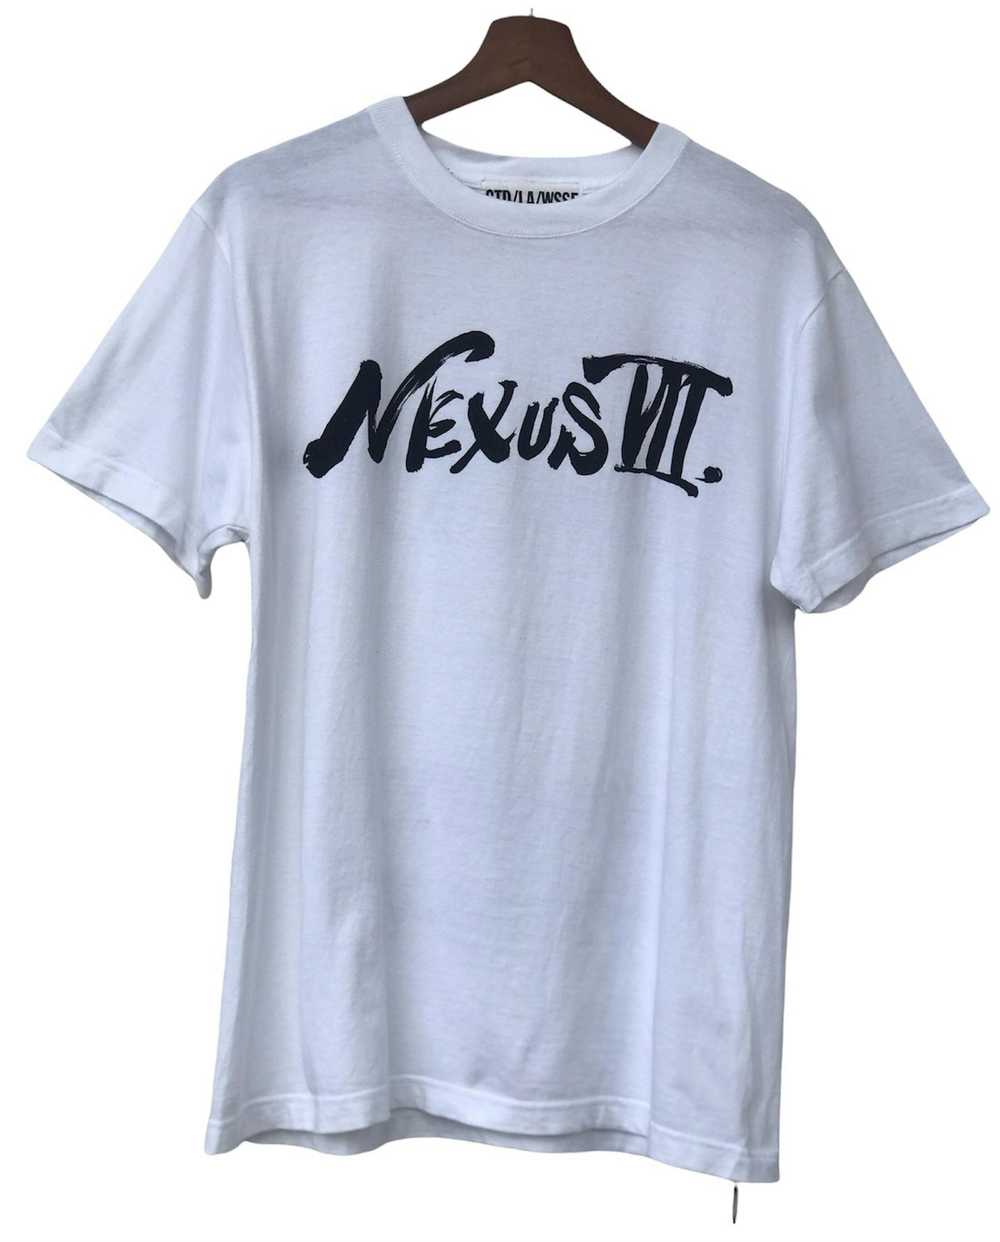 Nexus Vii Nexus 7 Luxury Shirt - image 1